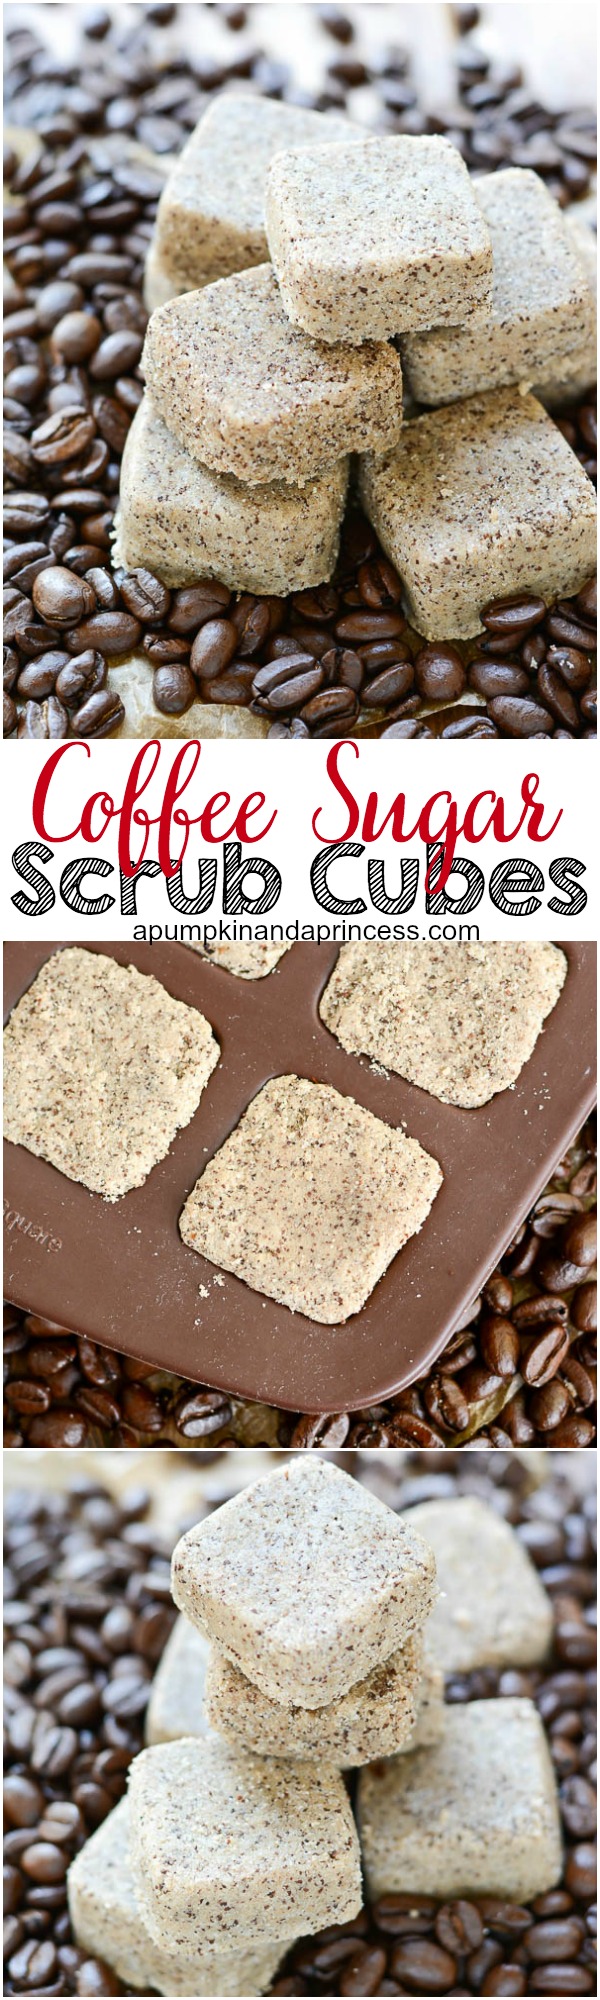 Coffee-Sugar-Scrub-Cubes1